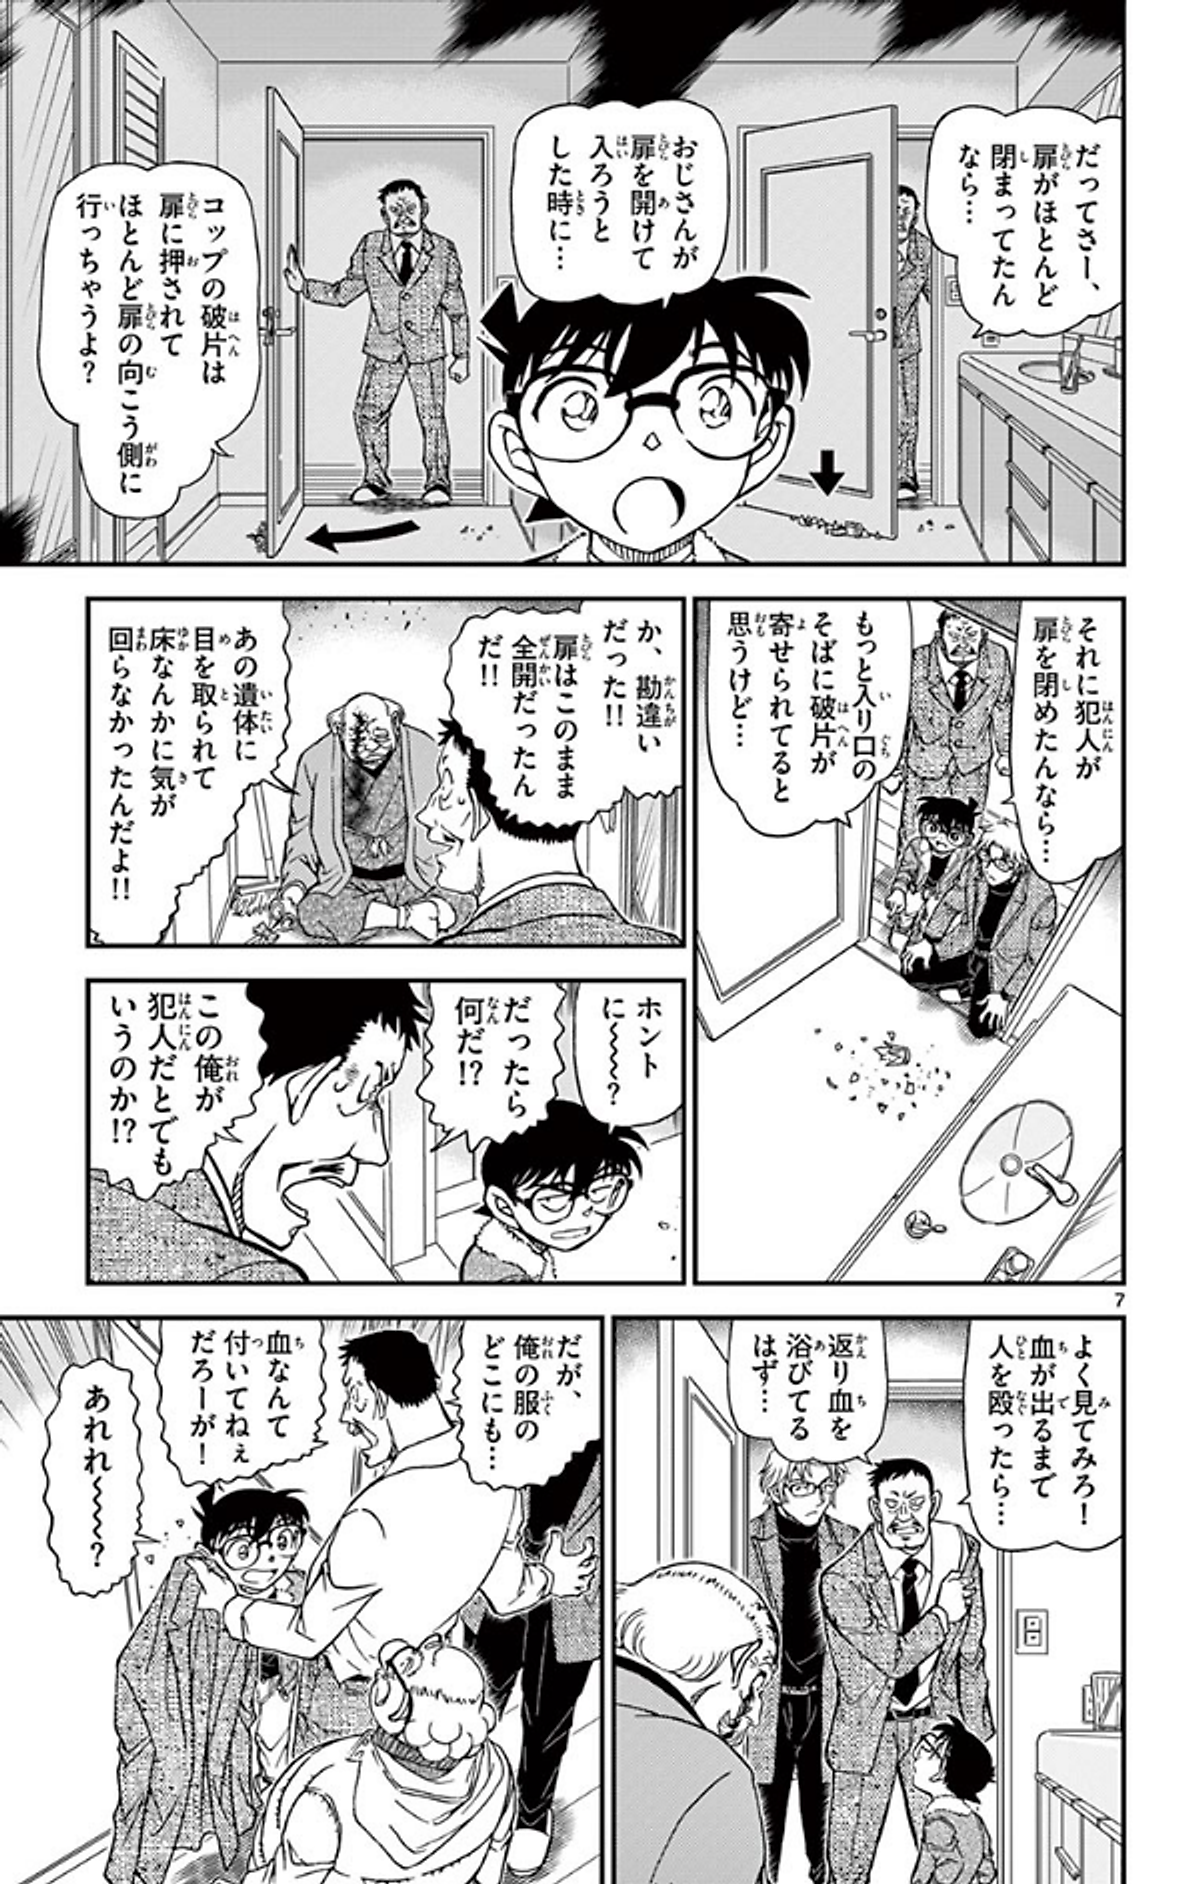 名探偵コナン 90 - Detective Conan 90